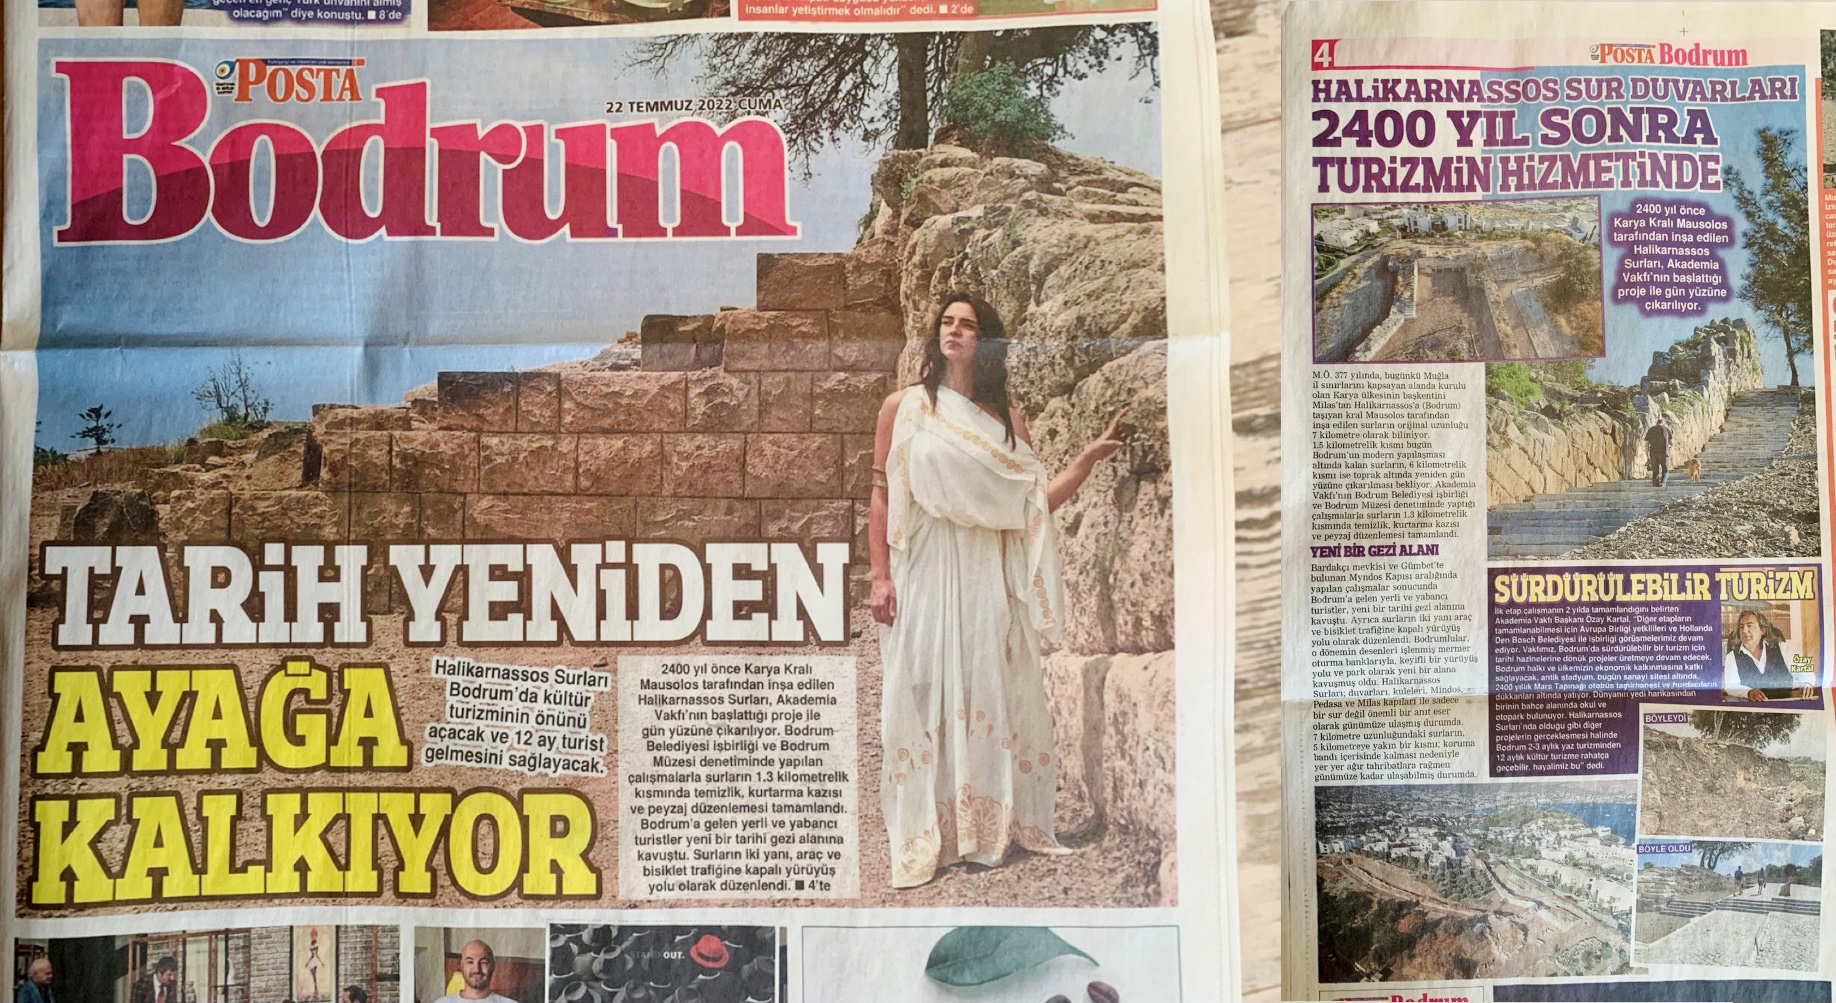 TARİH YENİDEN AYAĞA KALKIYOR! Halikarnassos Sur Duvarları, 2400 yıl Sonra Turizmin Hizmetinde